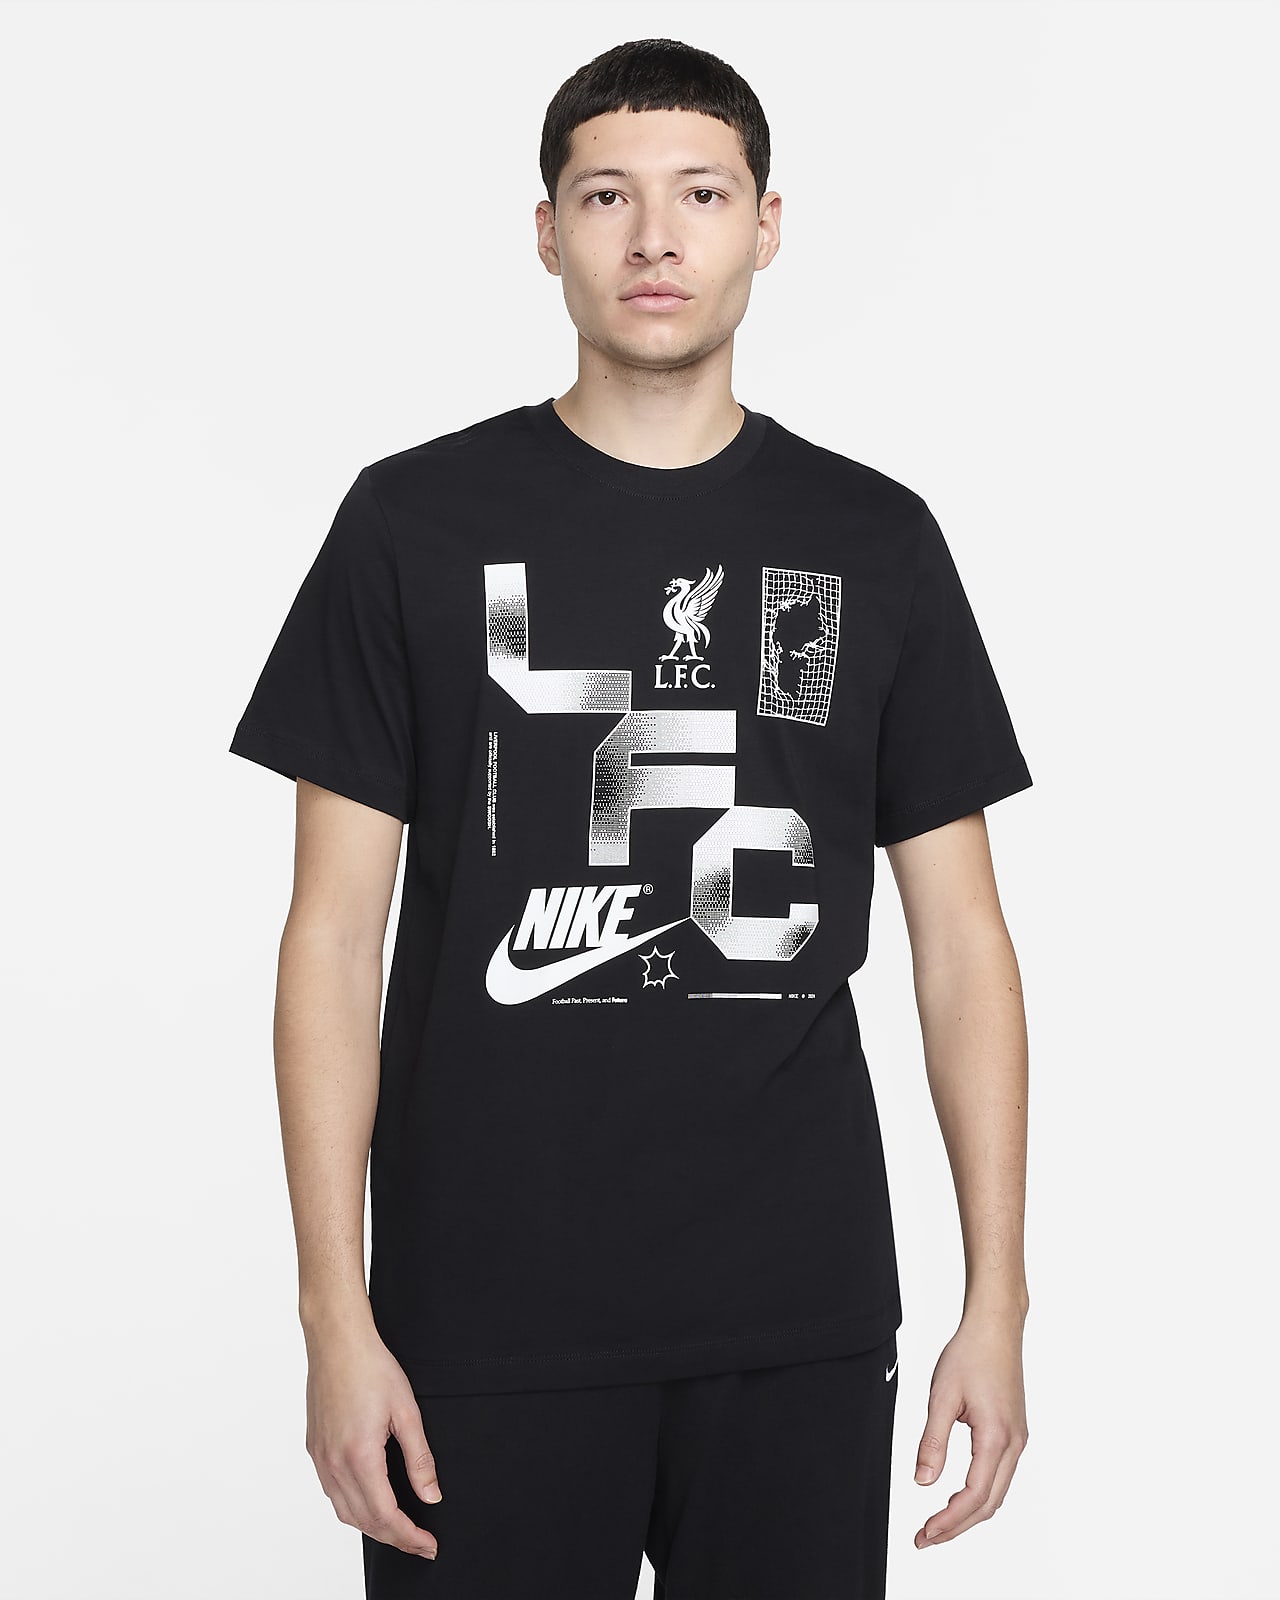 Ανδρικό ποδοσφαιρικό T-Shirt Nike Λίβερπουλ